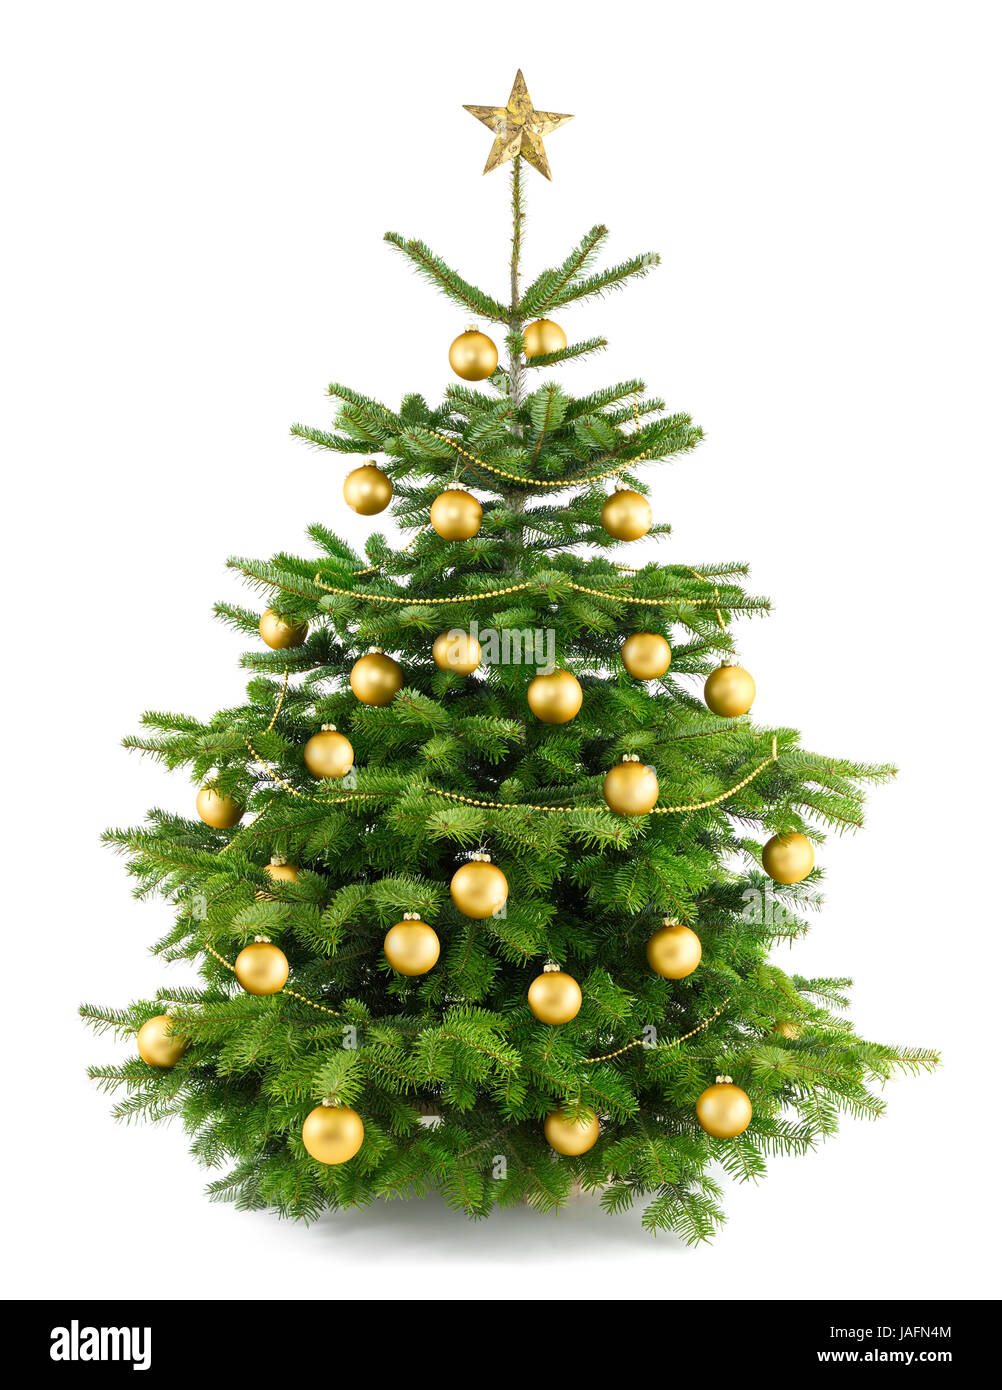 Studioaufnahme von golden geschmücktem Weihnachtsbaum auf weiß Stock Photo